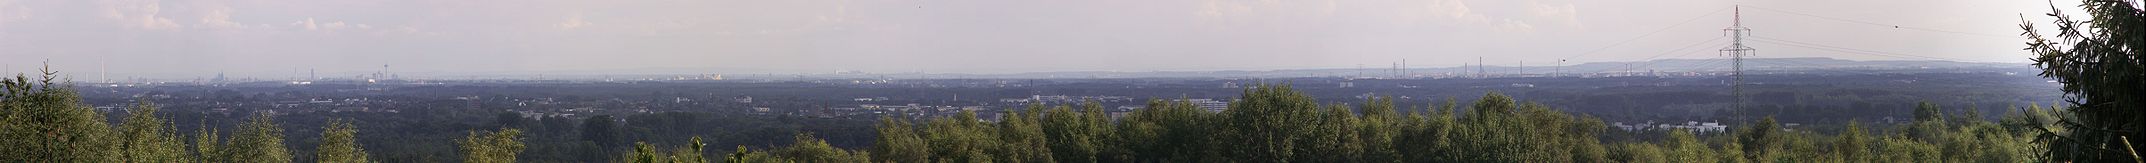 Teil der Bucht von Norden. Links sind der Kölner Dom und der Fernmeldeturm Colonius zu erkennen. Am rechten Bildrand ist das Bayerwerk Dormagen. Im Hintergrund links die Eifel, die Ville in der Mitte und Braunkohleabraumhalden rechts.